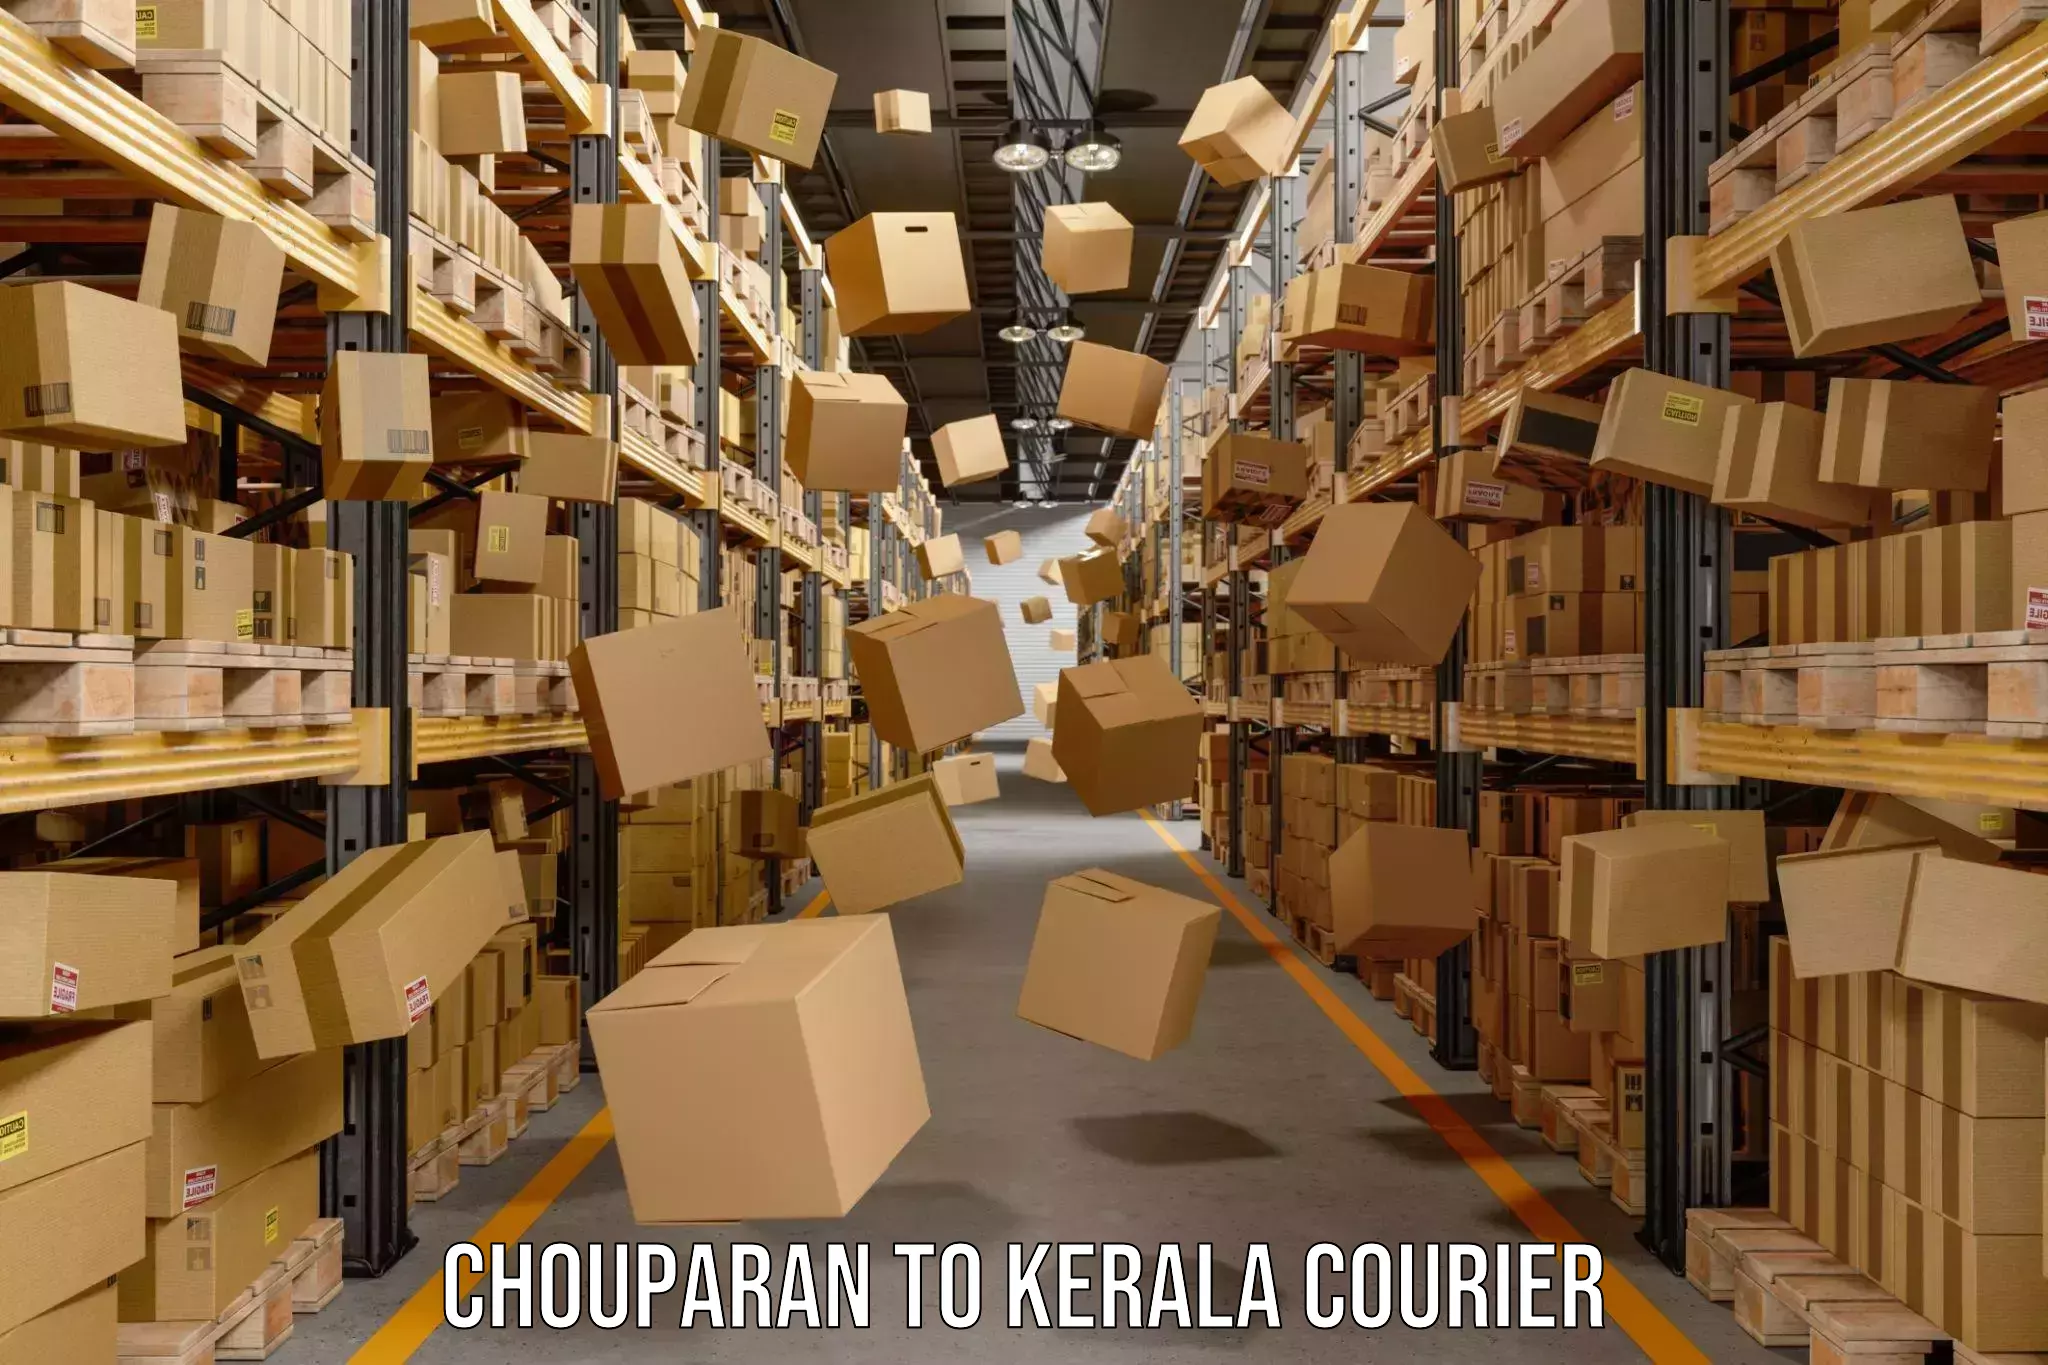 Express package handling Chouparan to Karukachal